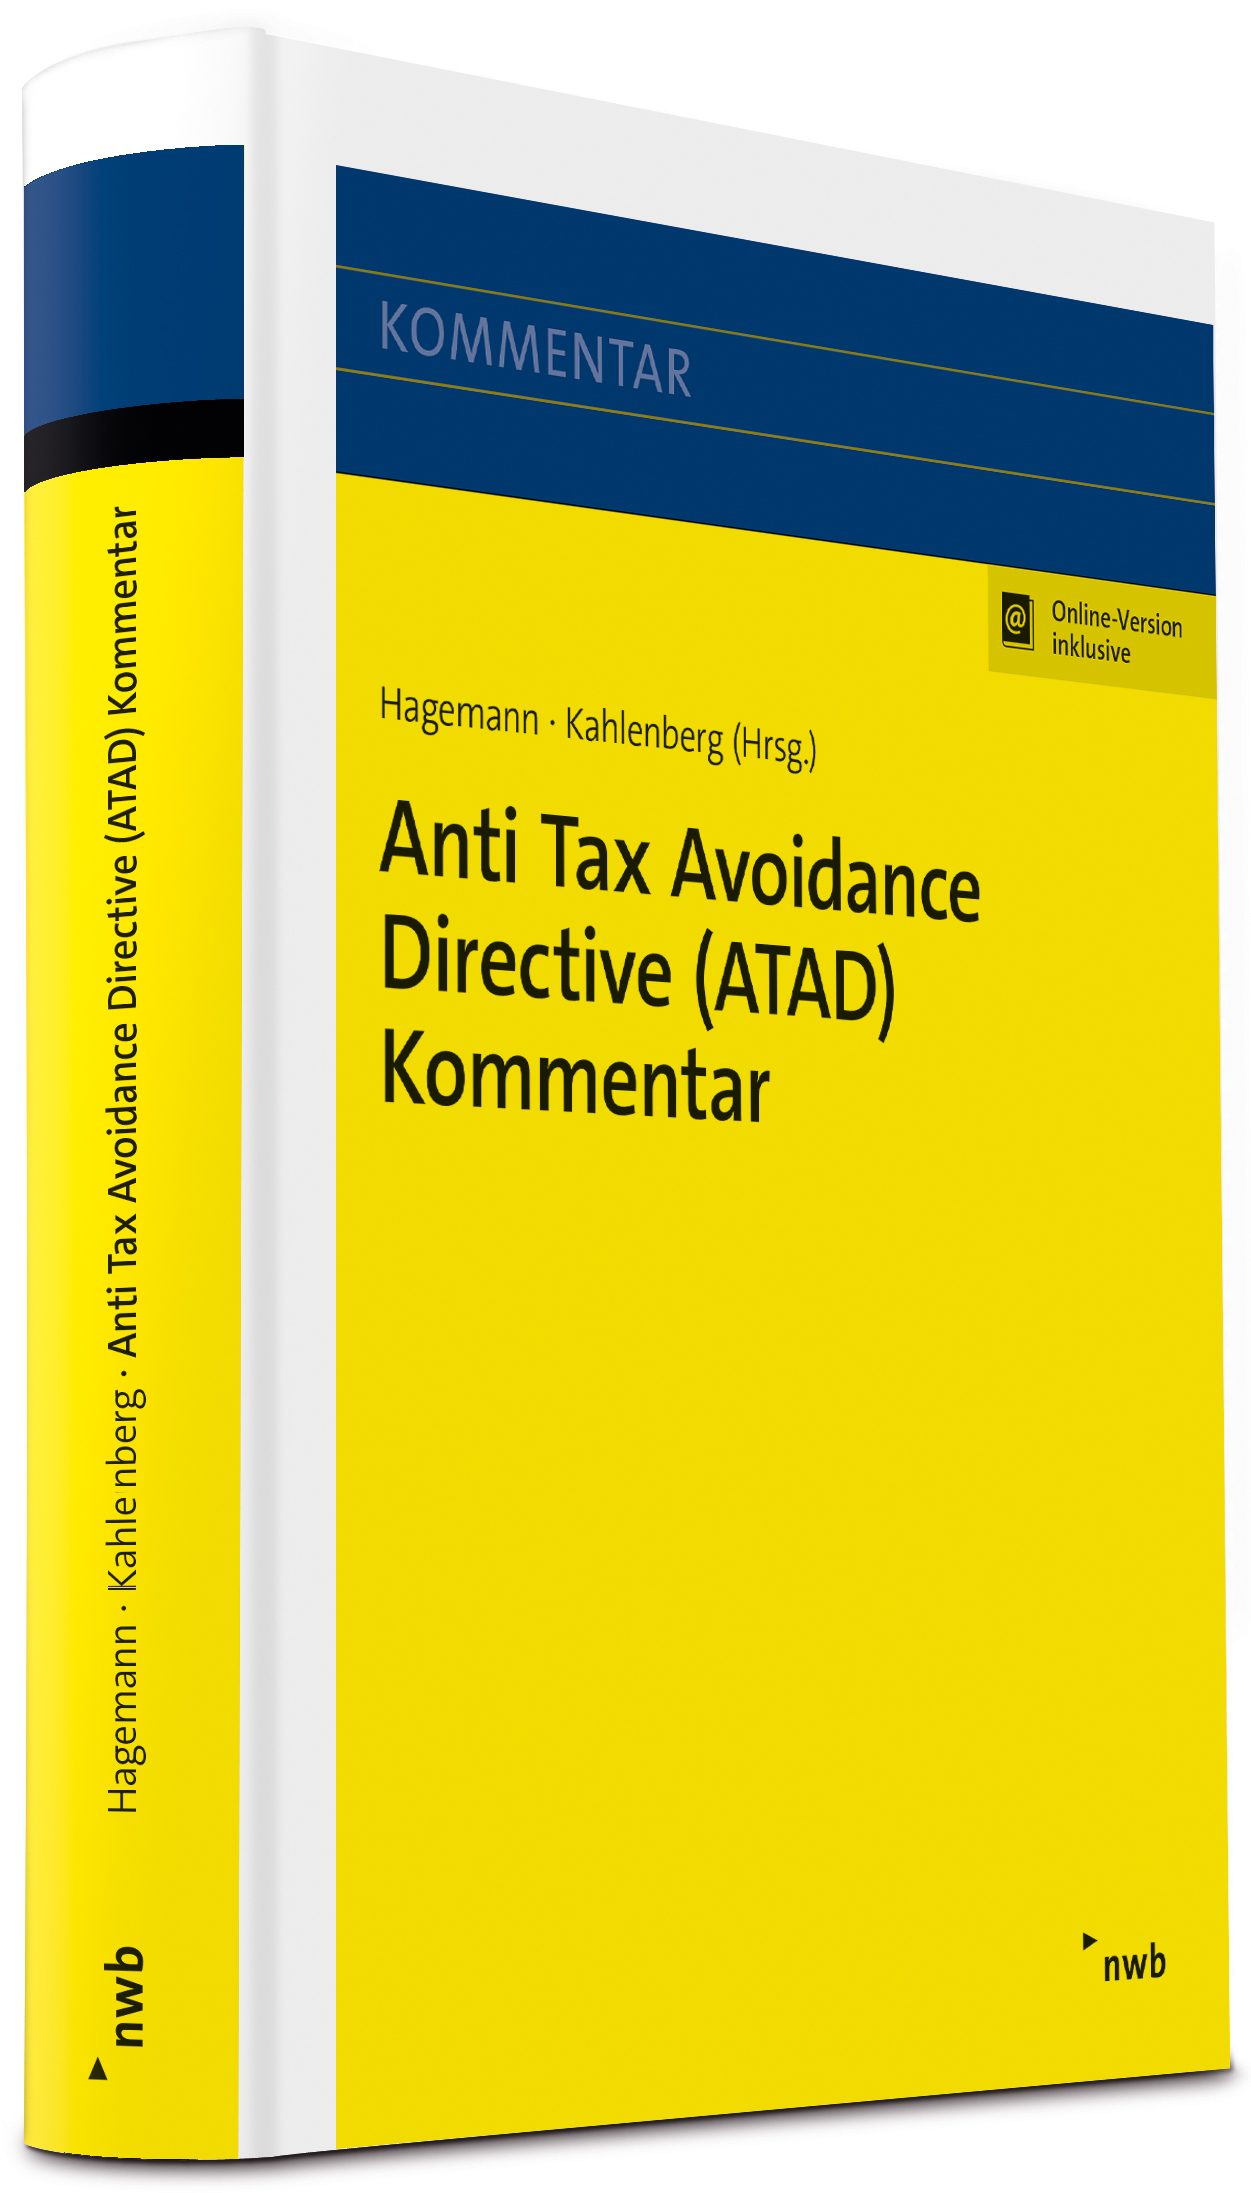 Anti Tax Avoidance Directive (ATAD) Kommentar